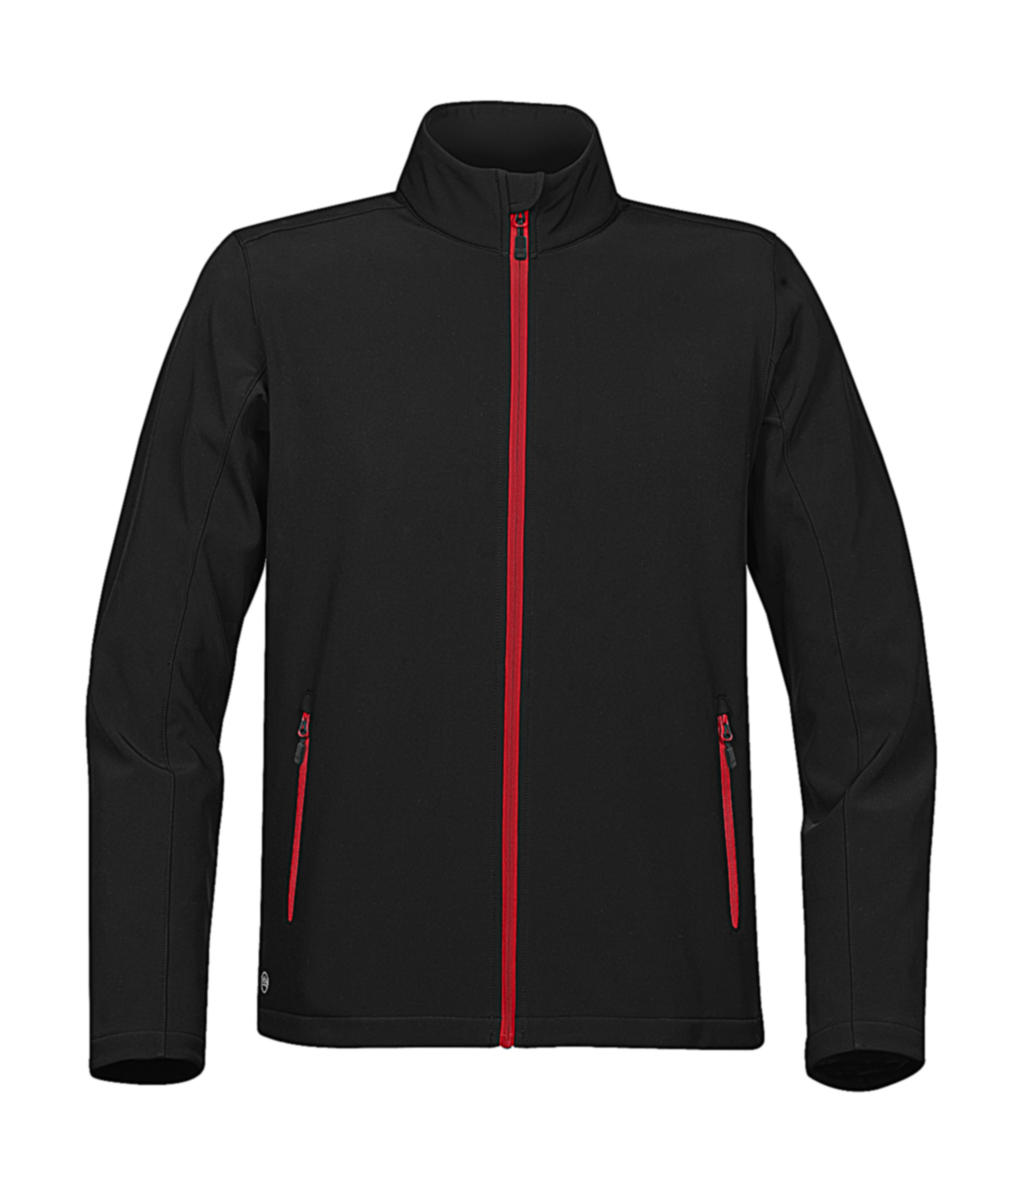  Orbiter Softshell Jacket in Farbe Black/Bright Red